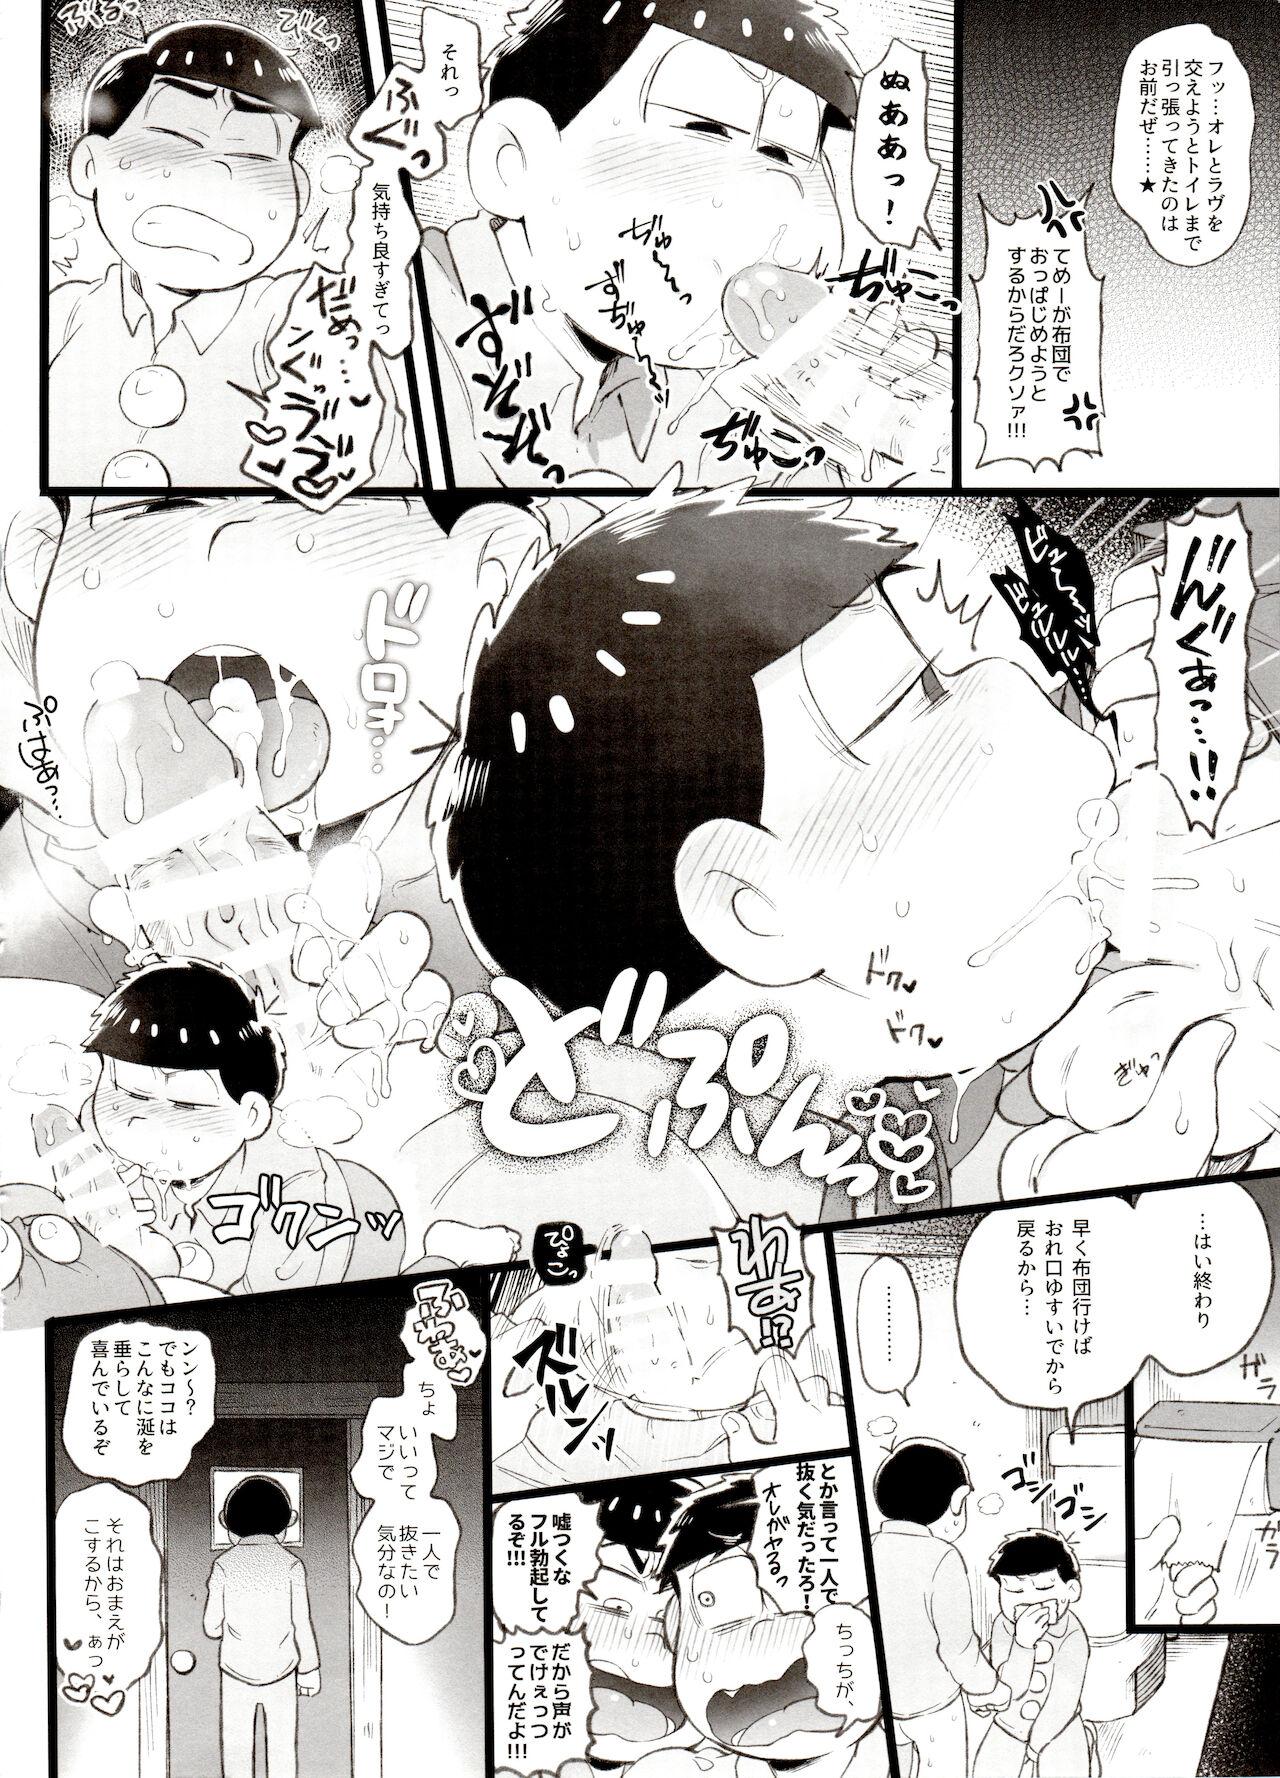 Inked Kahou 10-ji Yon no Omake Hon + Andante no Koufukuron Gojitsu Manga - Osomatsu-san Danish - Page 3